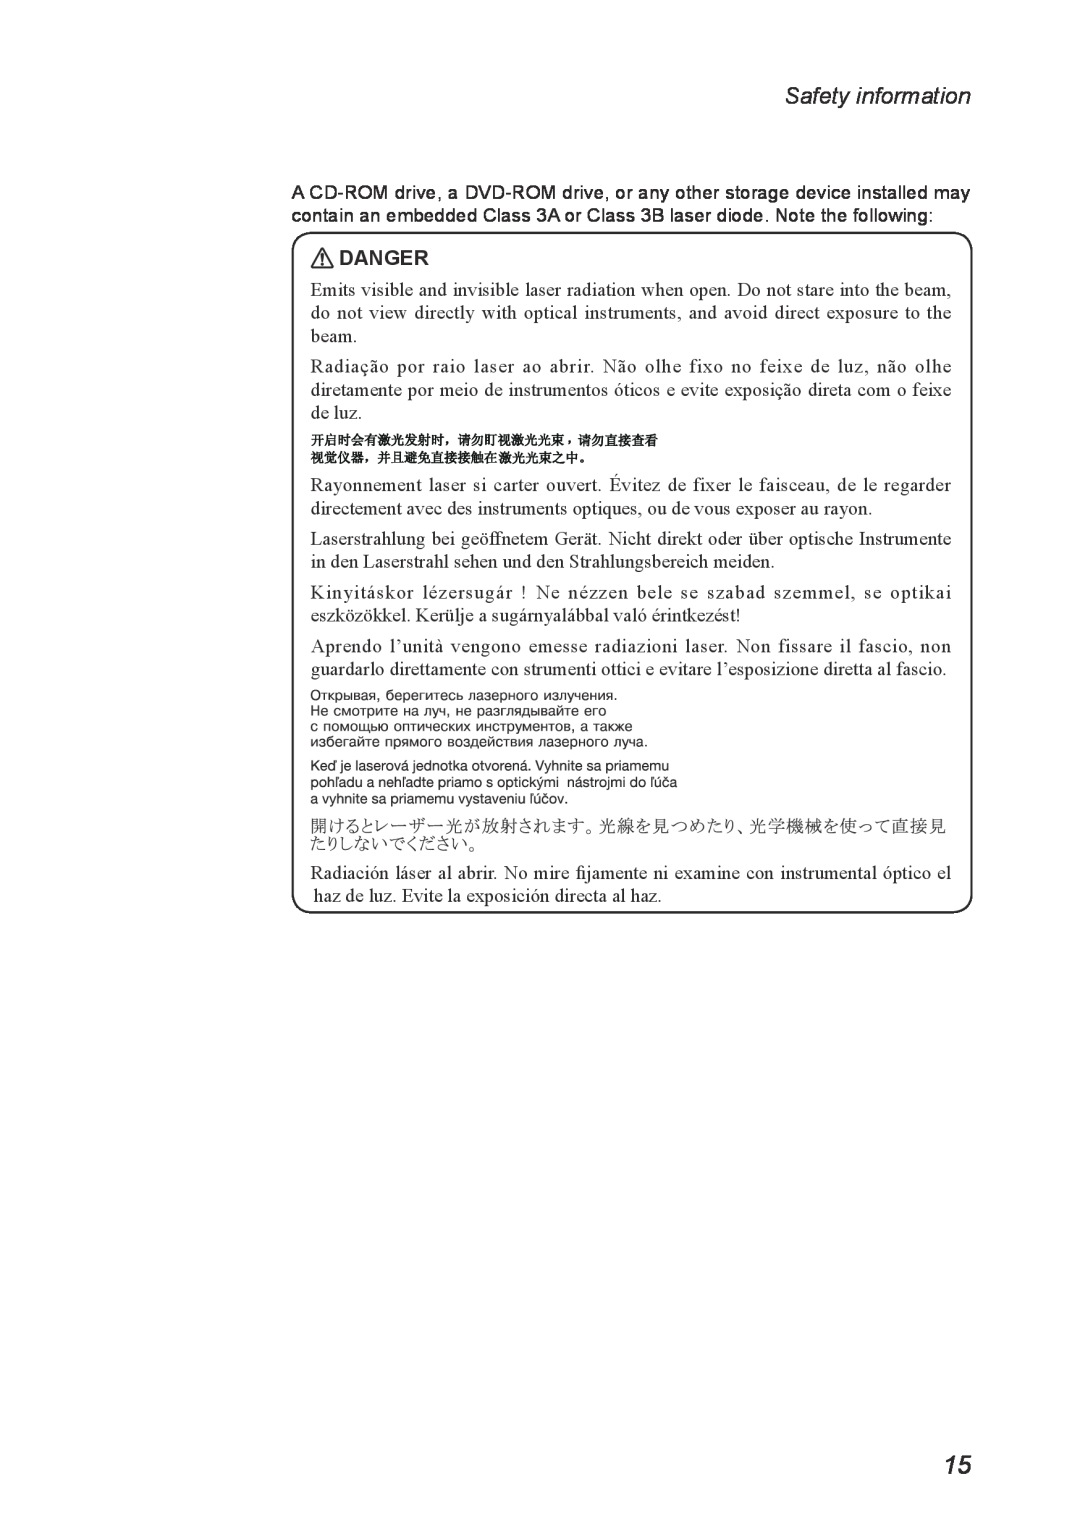 Lenovo U300S, U400 manual Danger, Safety information 